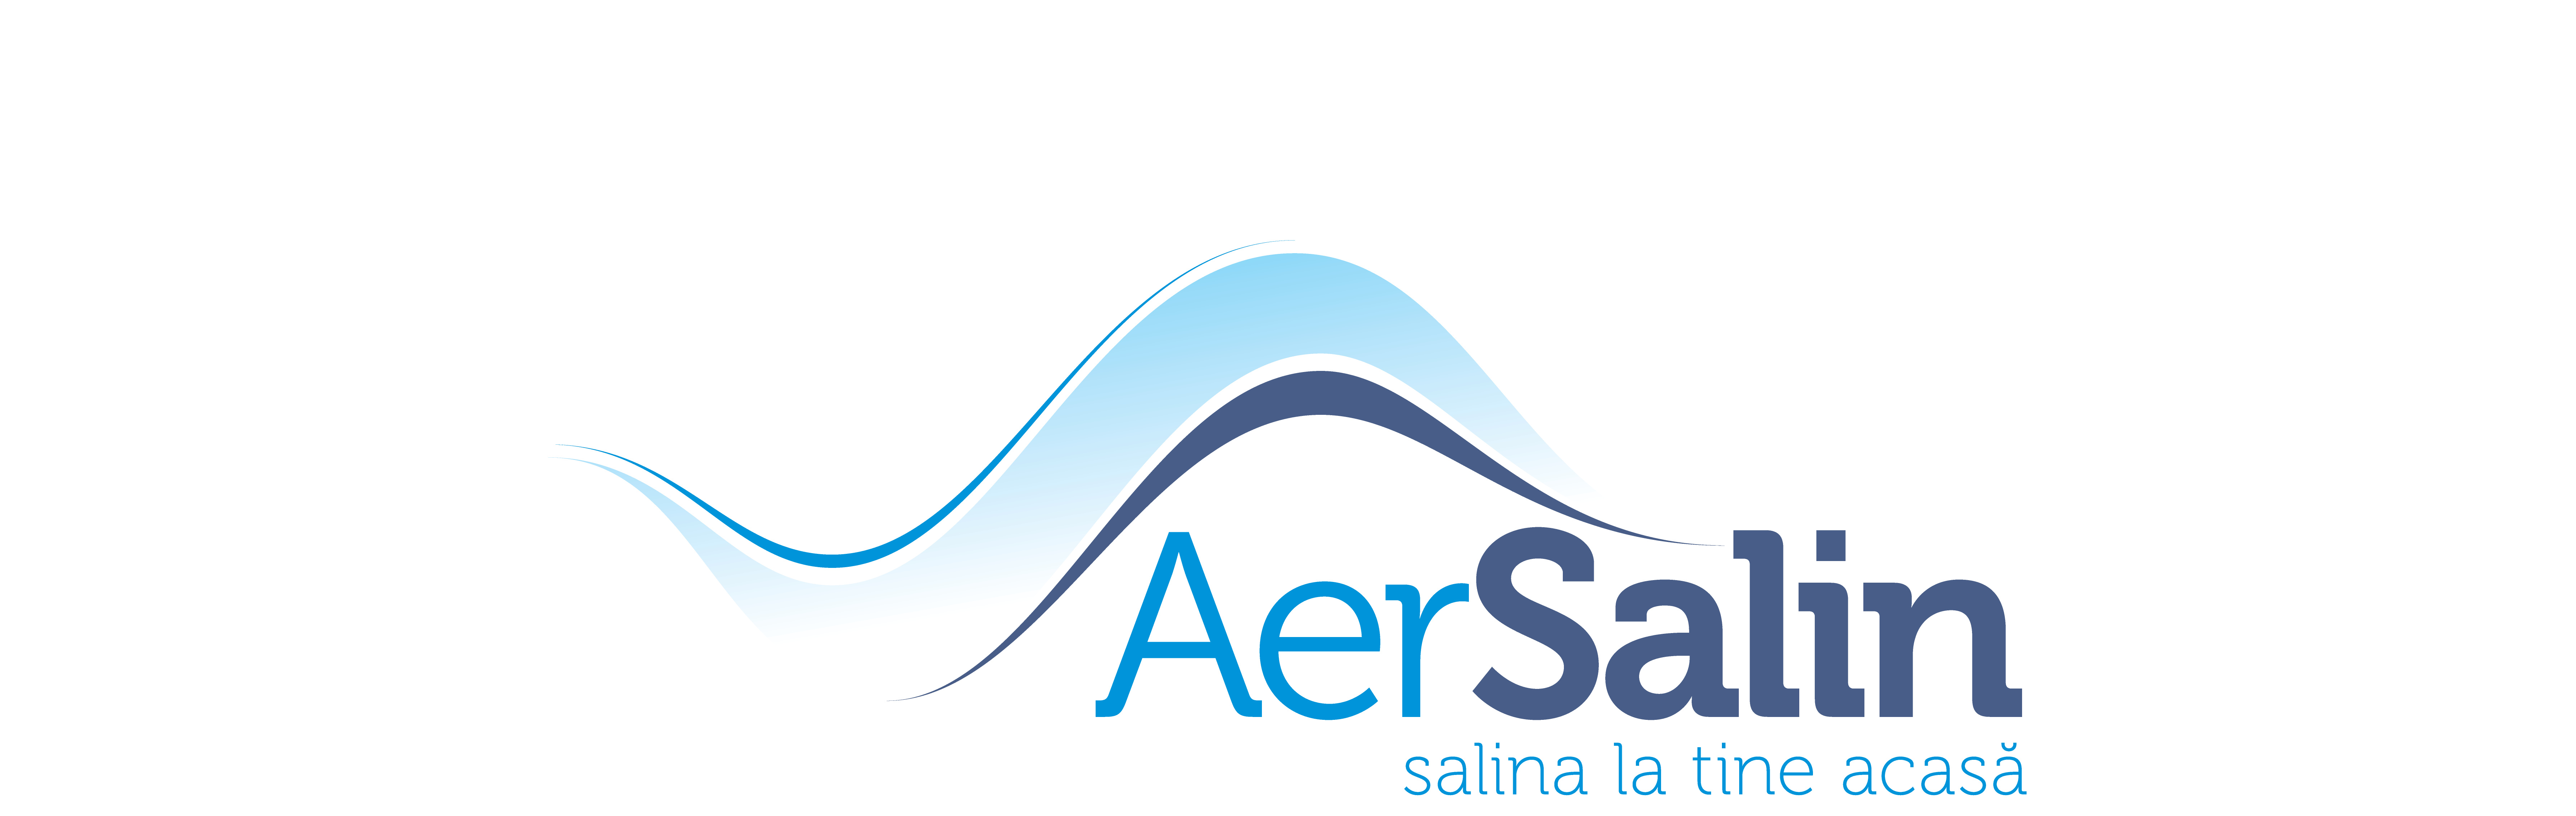 logo_Aer-salin